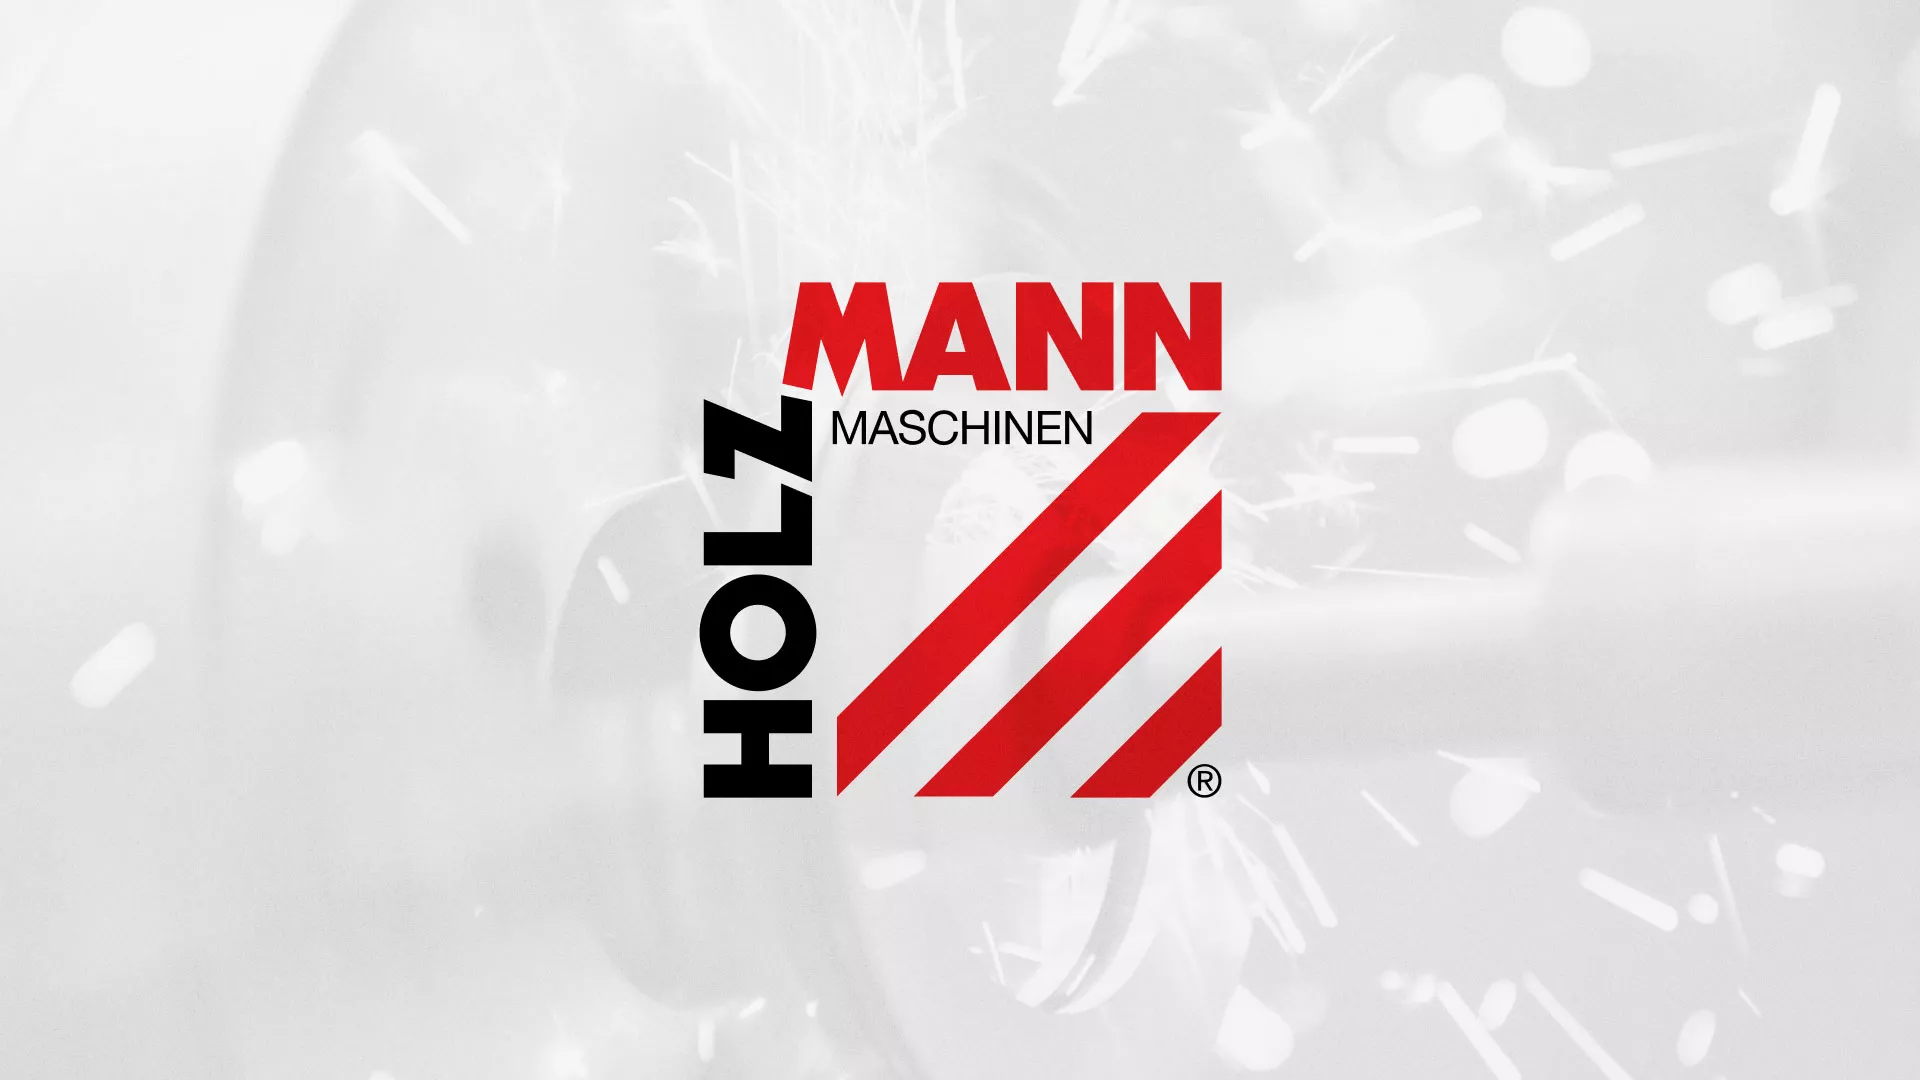 Создание сайта компании «HOLZMANN Maschinen GmbH» в Семилуках